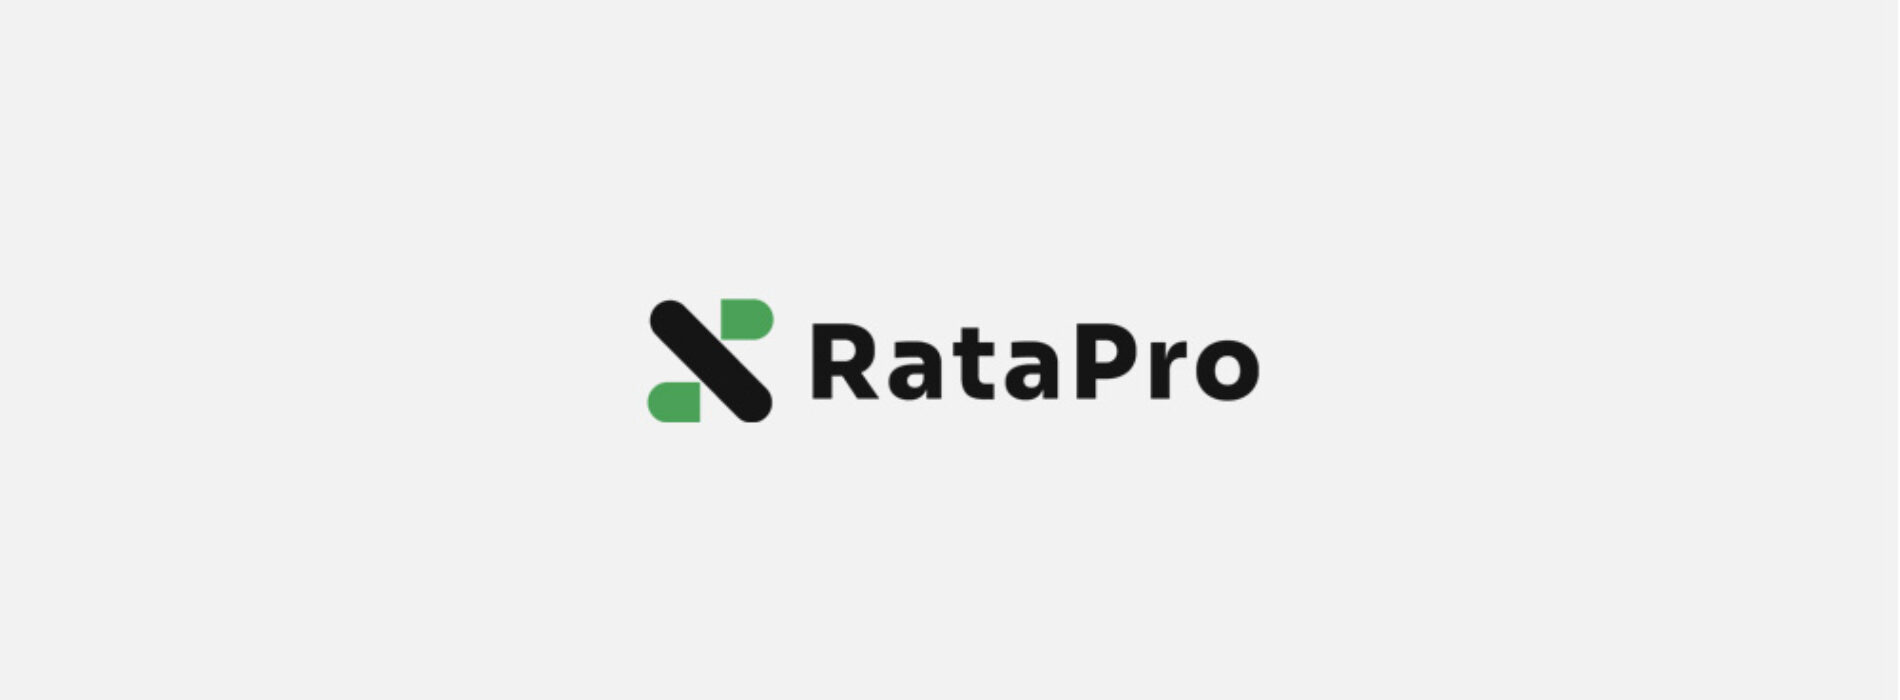 RataPro – sprawdziliśmy ofertę i opinie klientów